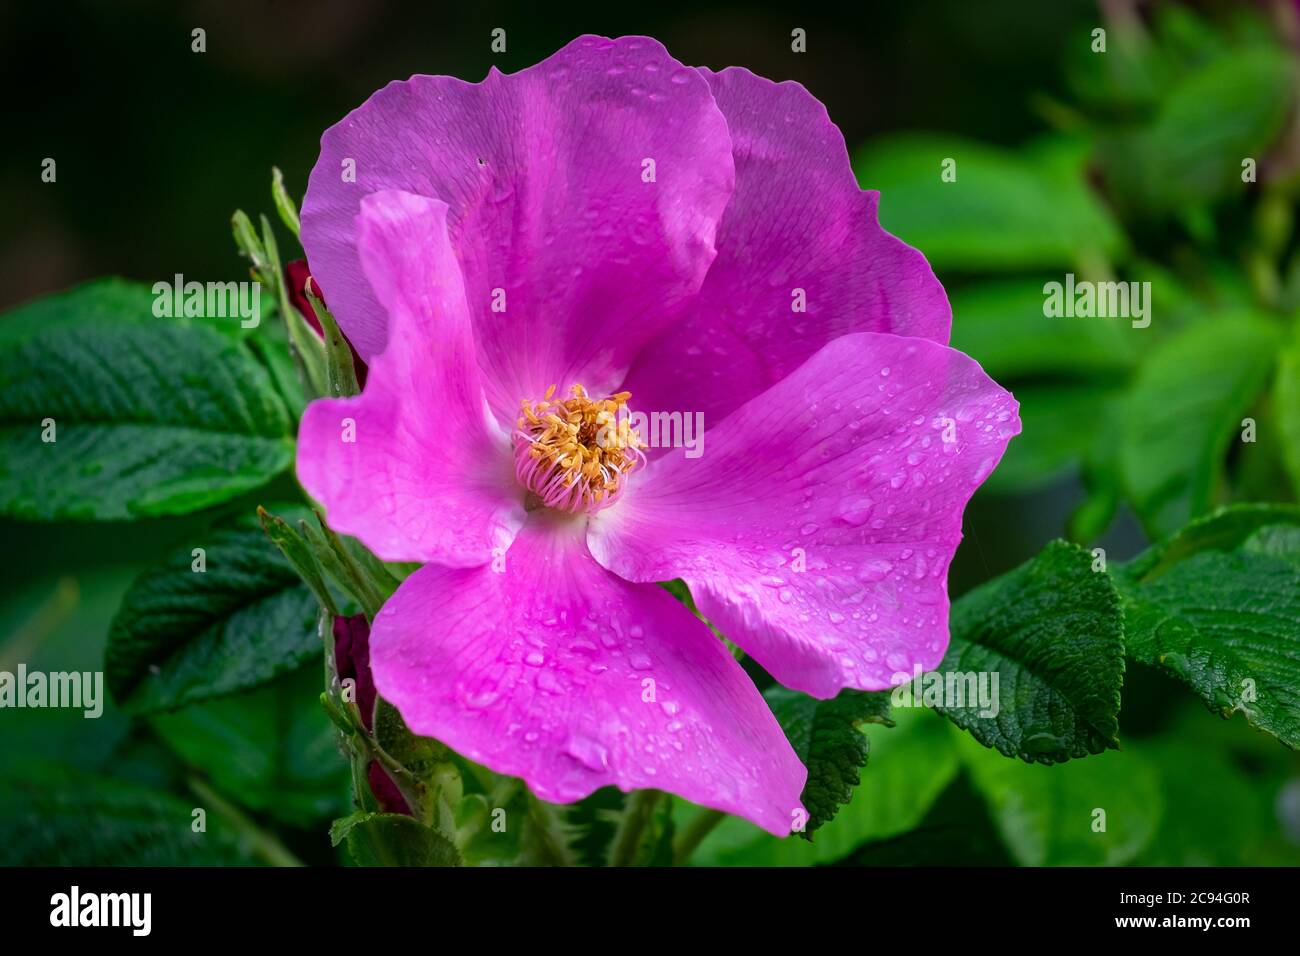 Una flor fucsia grande, canela silvestre rosa, con un centro amarillo. Los estambres son de color amarillo, los pétalos son de papel y rosa con una superficie brillante. Foto de stock